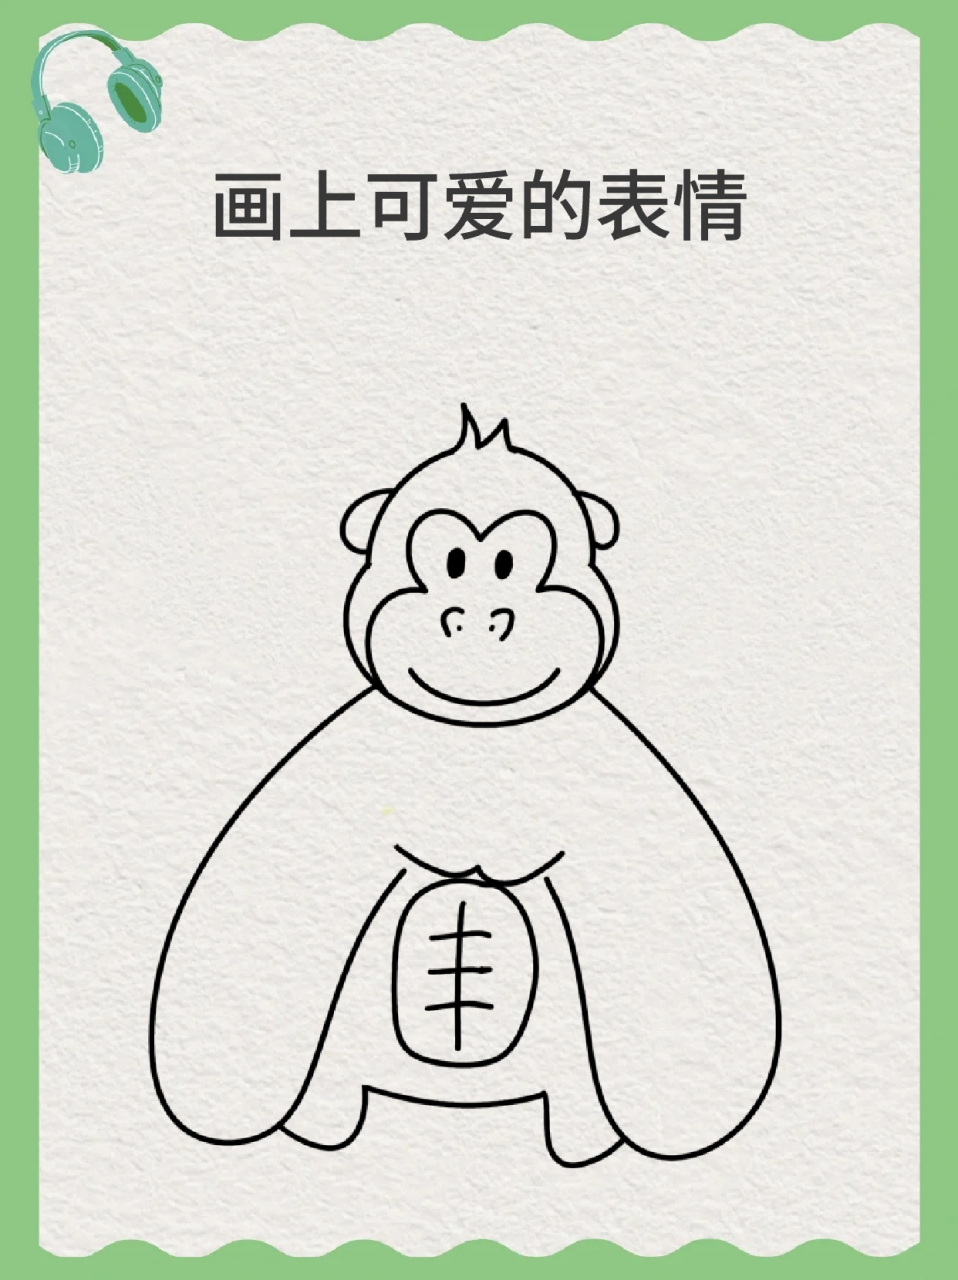 黑猩猩简笔画 78这两天去动物园玩,09最大的感受就是猩猩好聪明呀